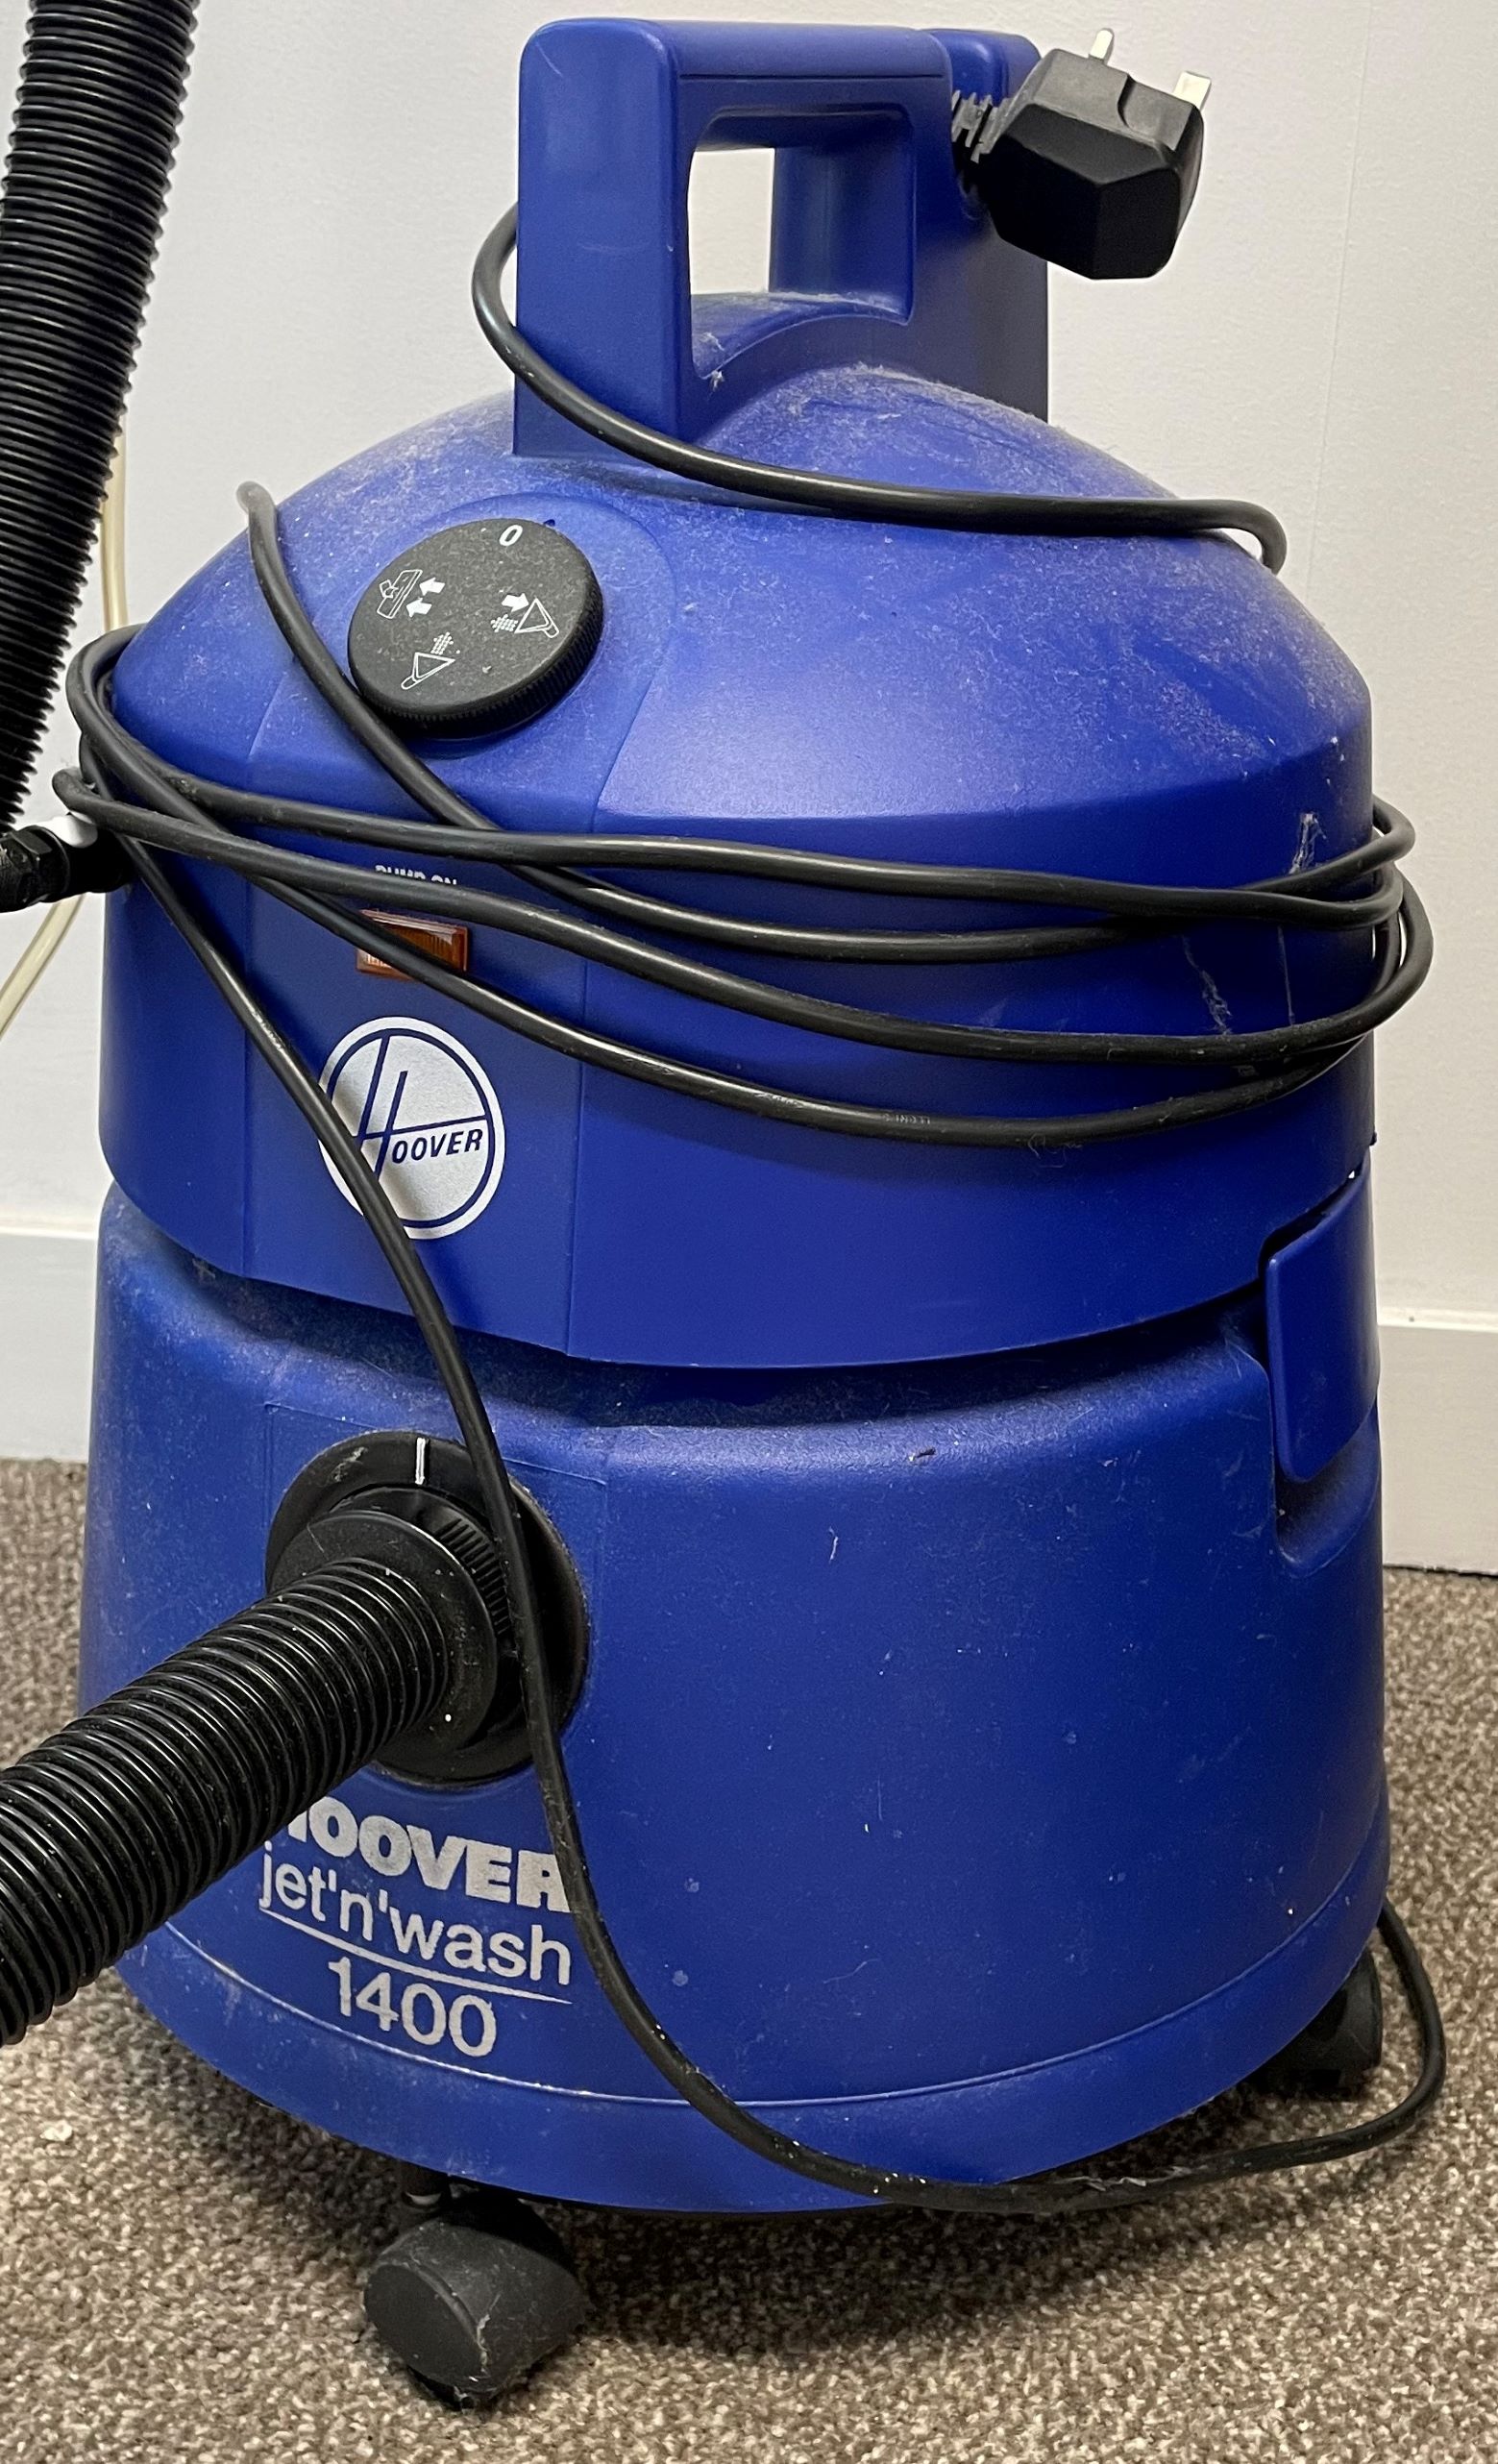 Hoover Jet n Wash 1400 carpet shampooer - Image 2 of 2